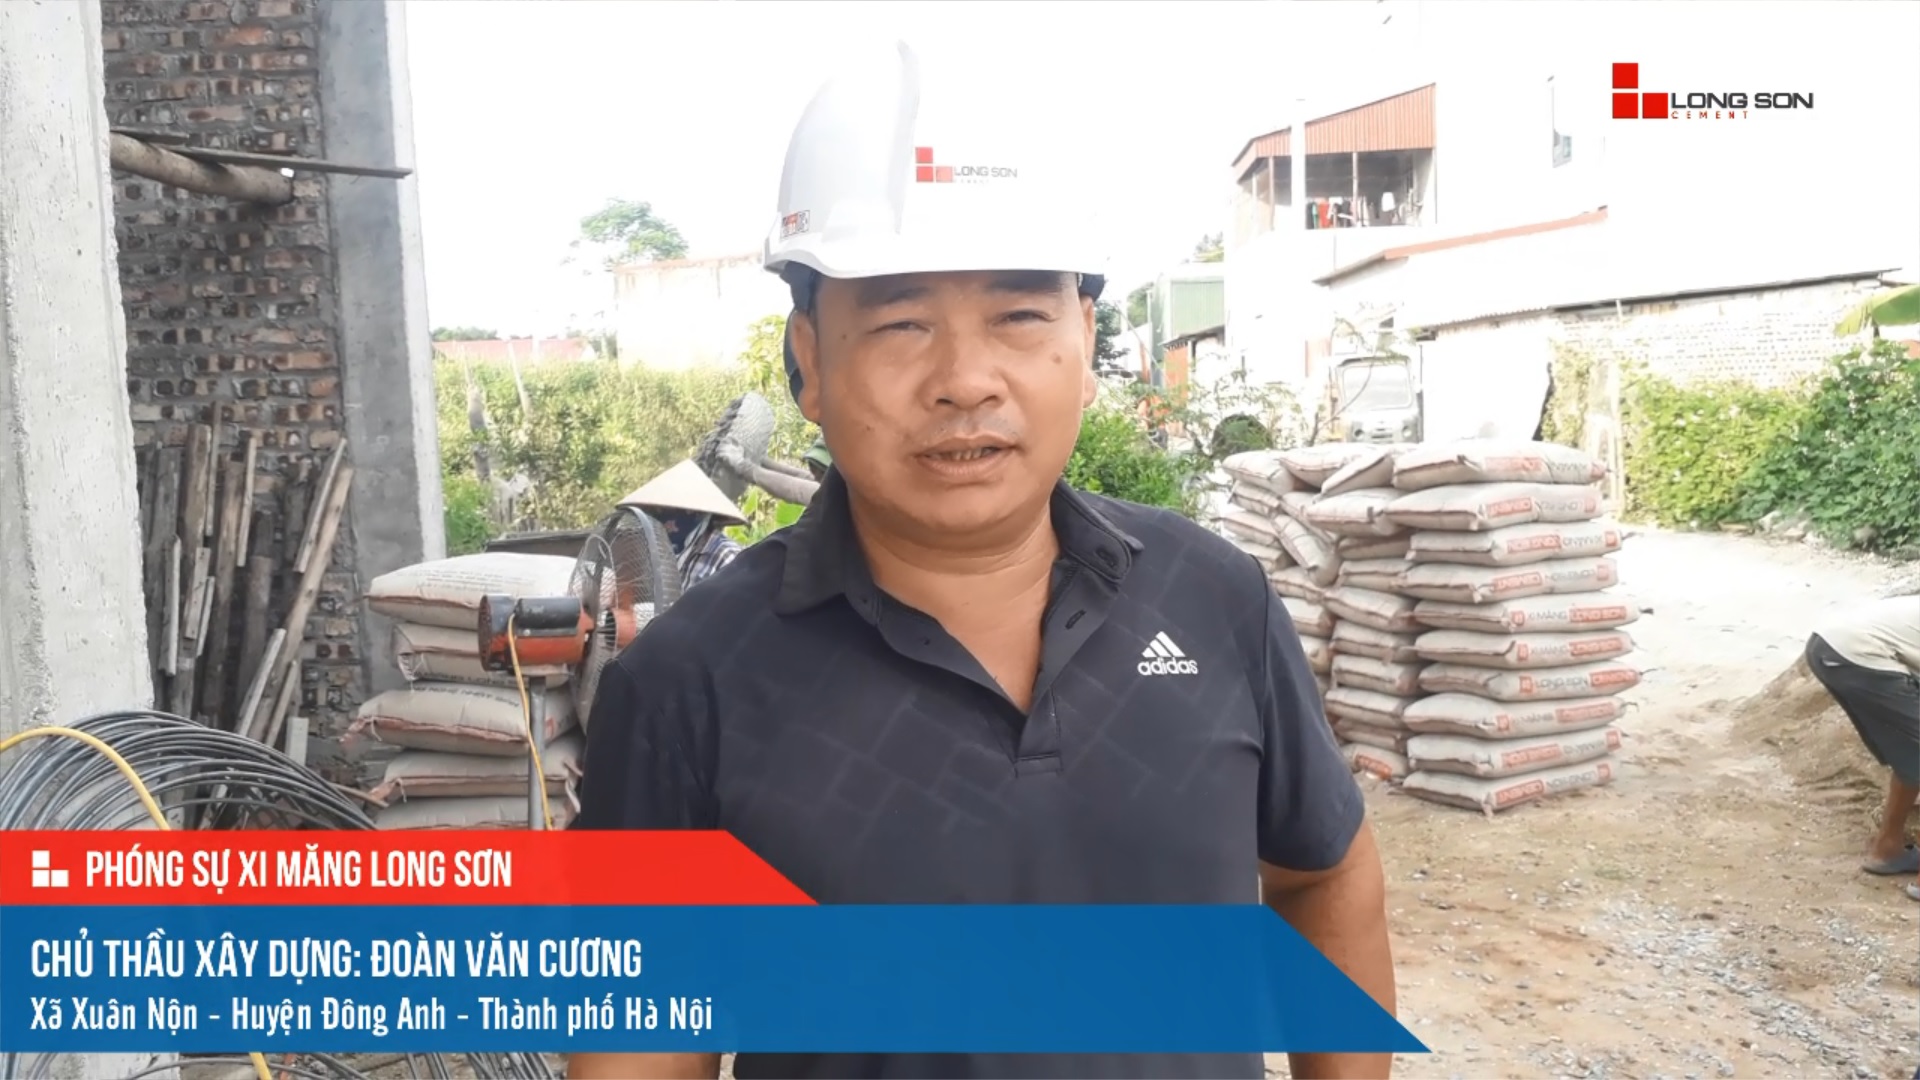 Phóng sự công trình sử dụng xi măng Long Sơn tại Hà Nội ngày 06/10/2021